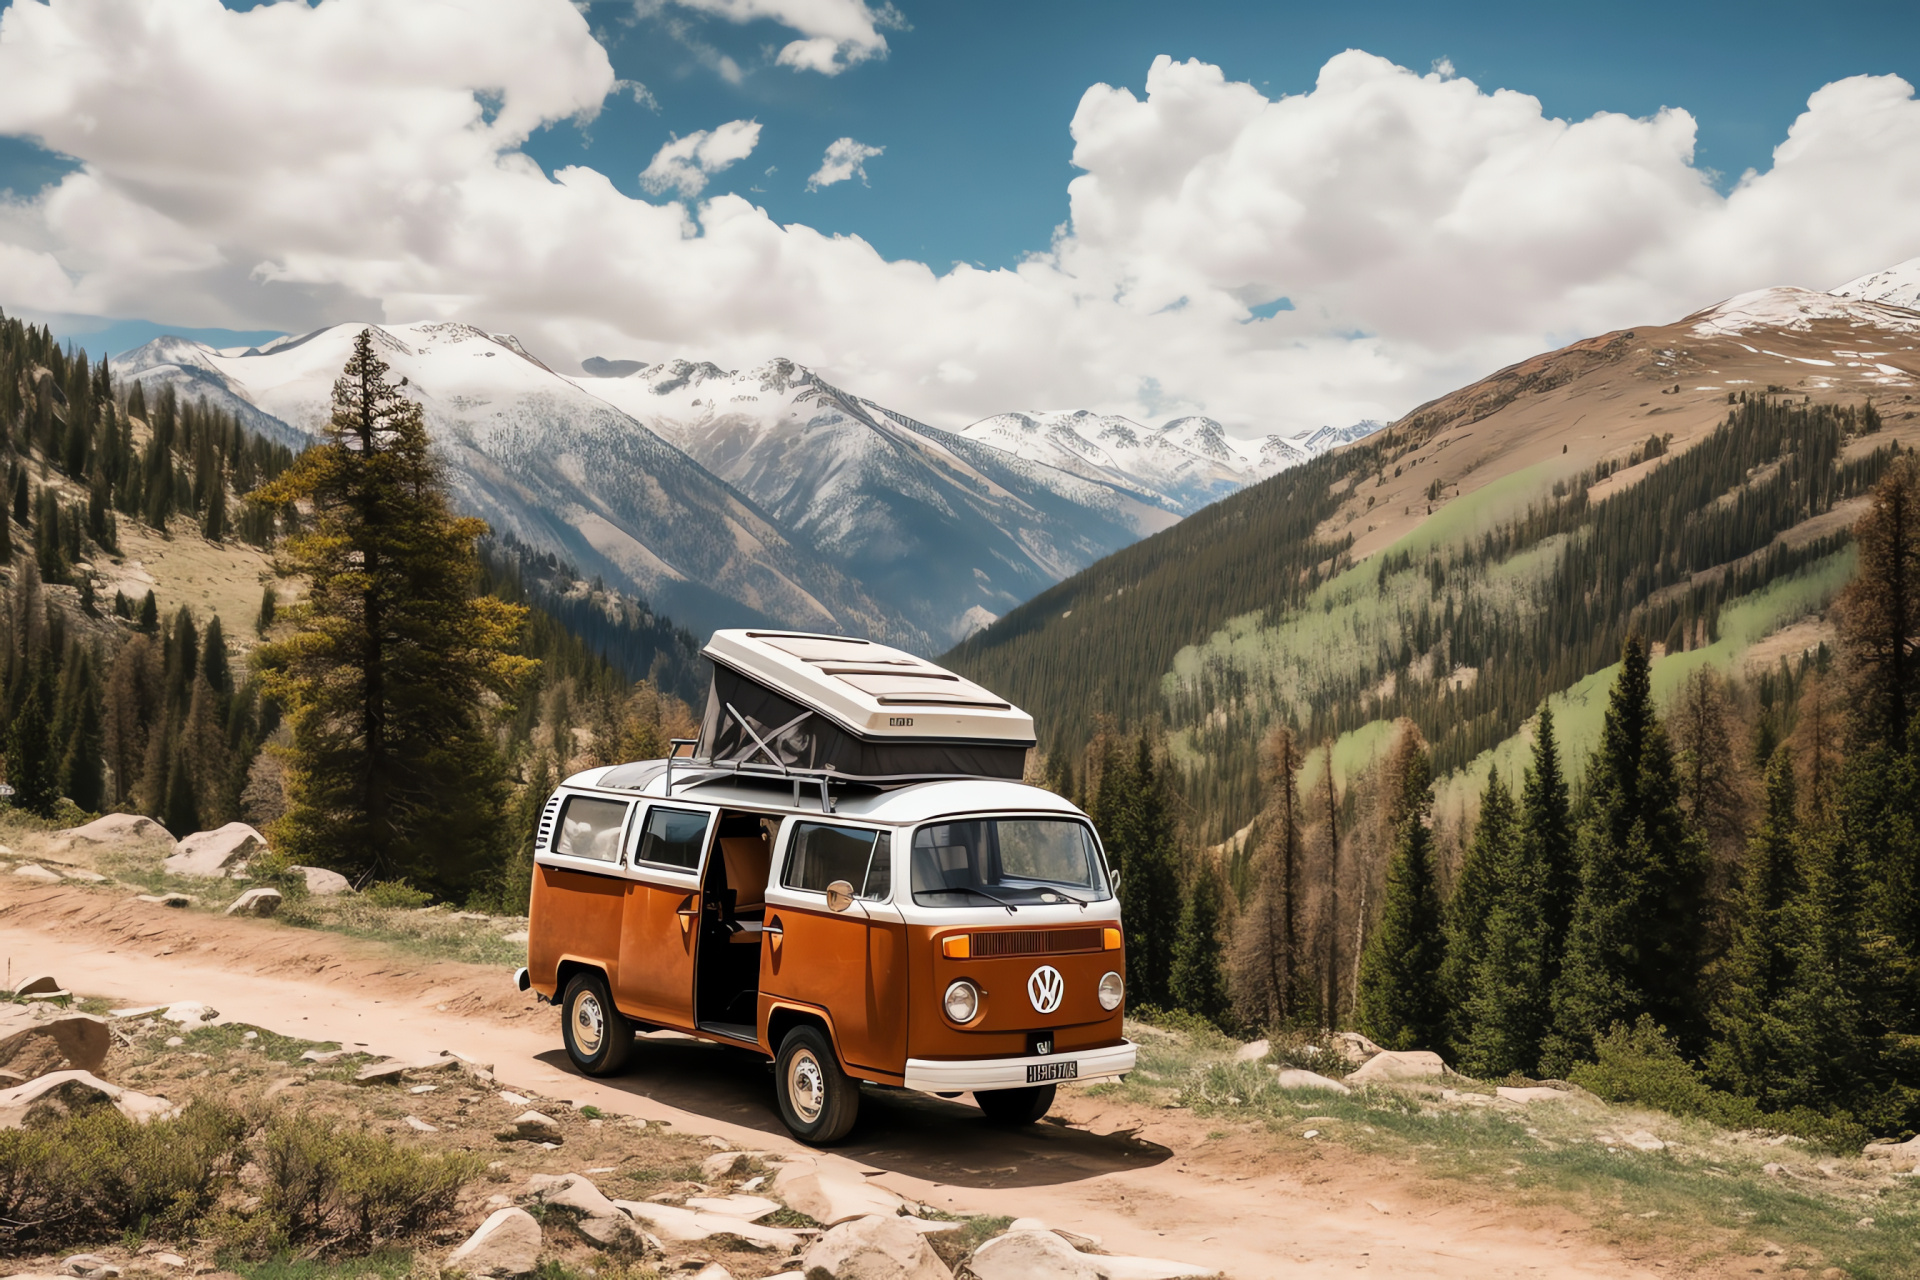 VW Bus, Colorado alpine landscape, camping equipment, durable vehicle accessories, coniferous forest surroundings, HD Desktop Image